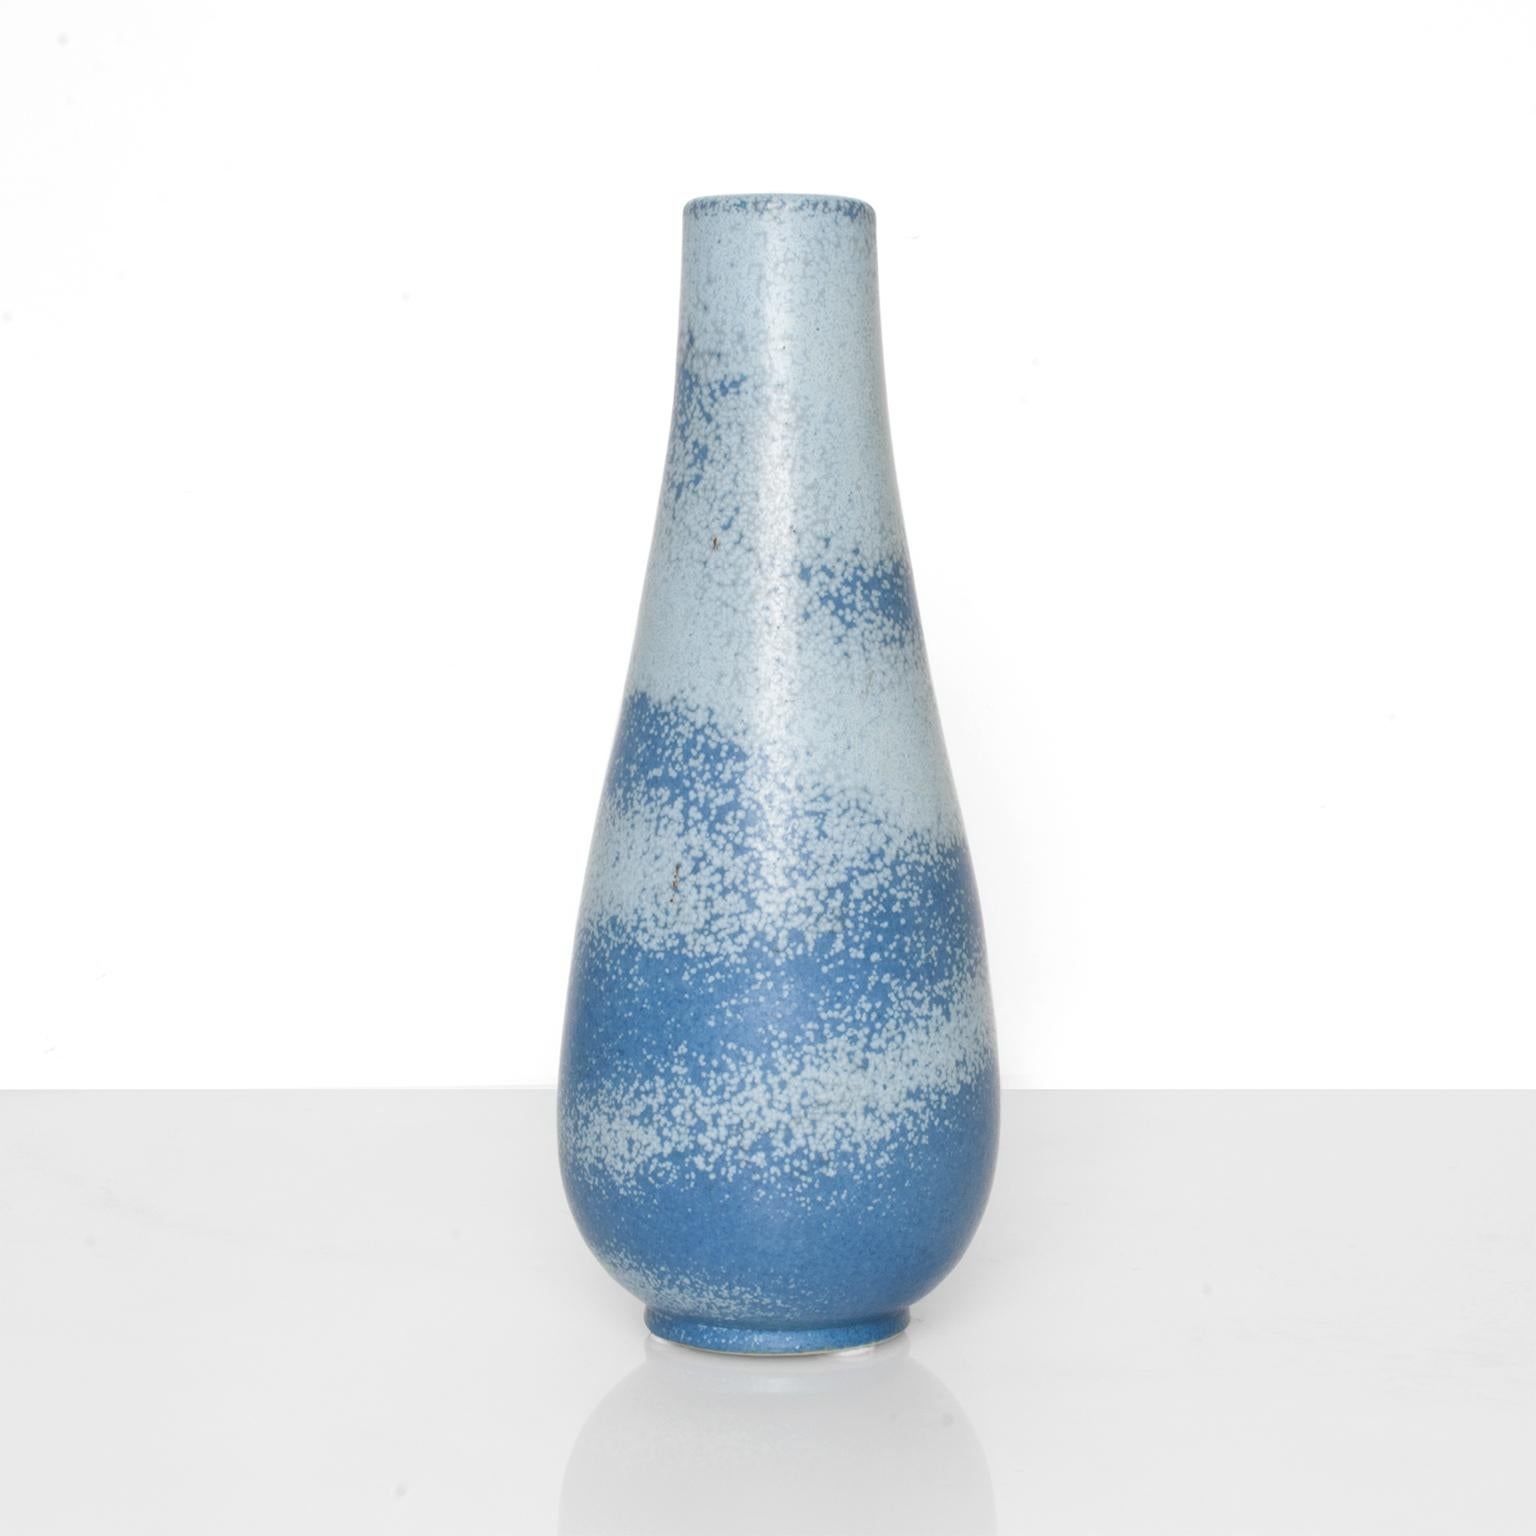 Glazed Scandinavian Modern Ceramic Vase in Light and Dark Blue by Gunnar Nylund